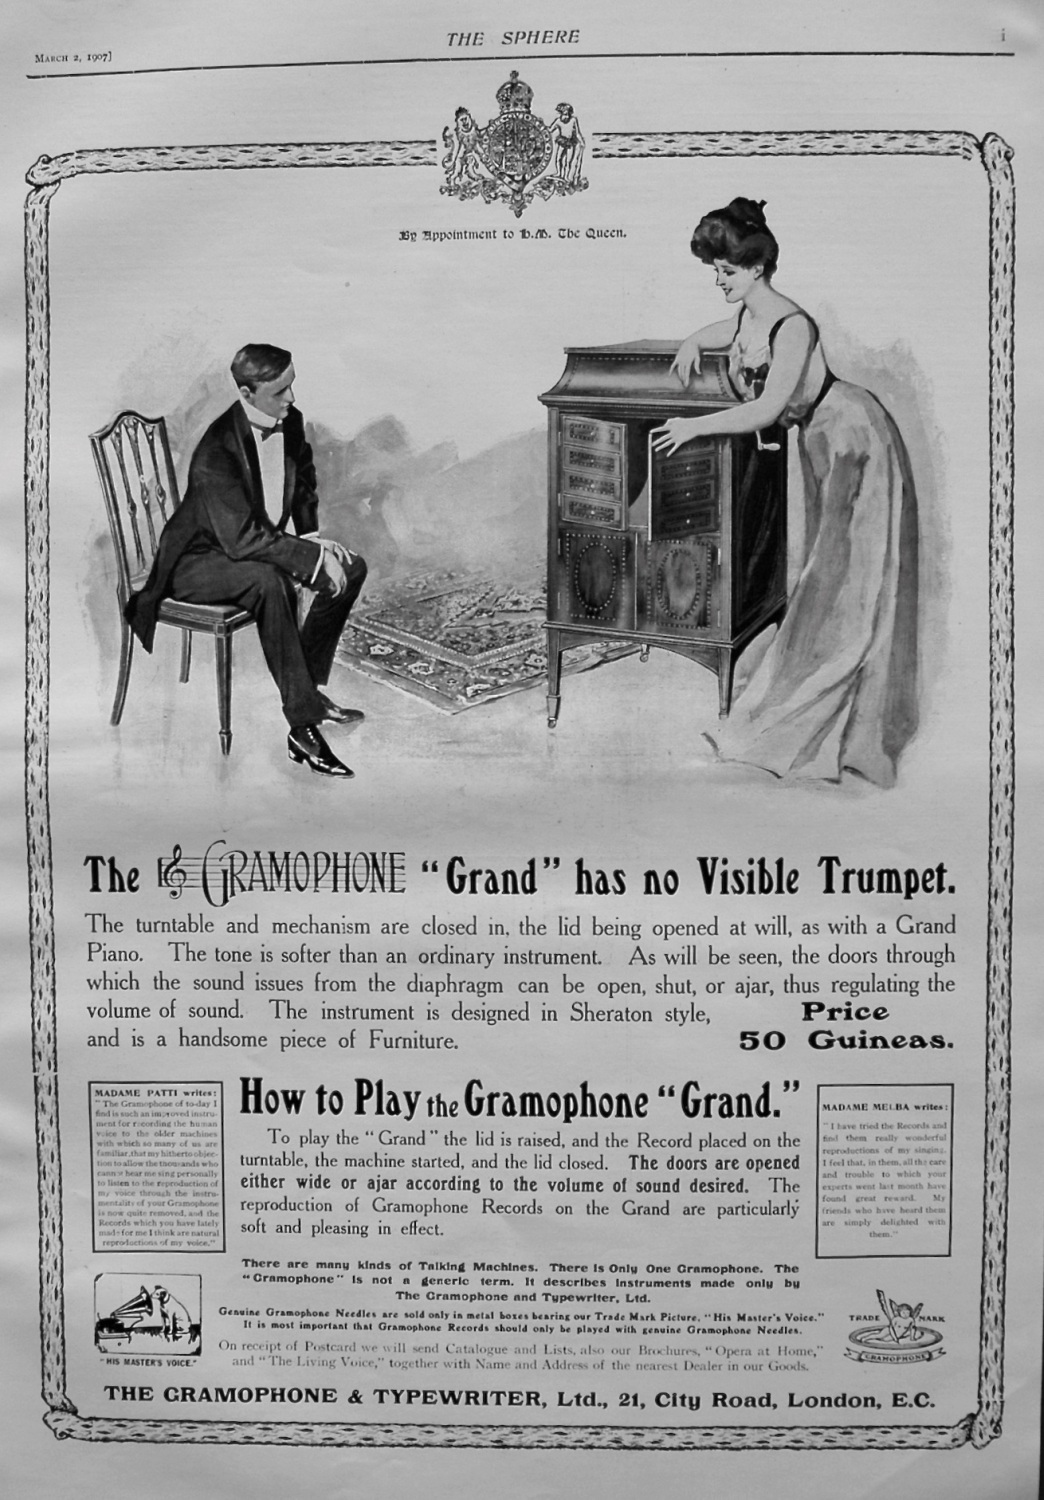 The Gramophone & Typewriter, Ltd. 1907